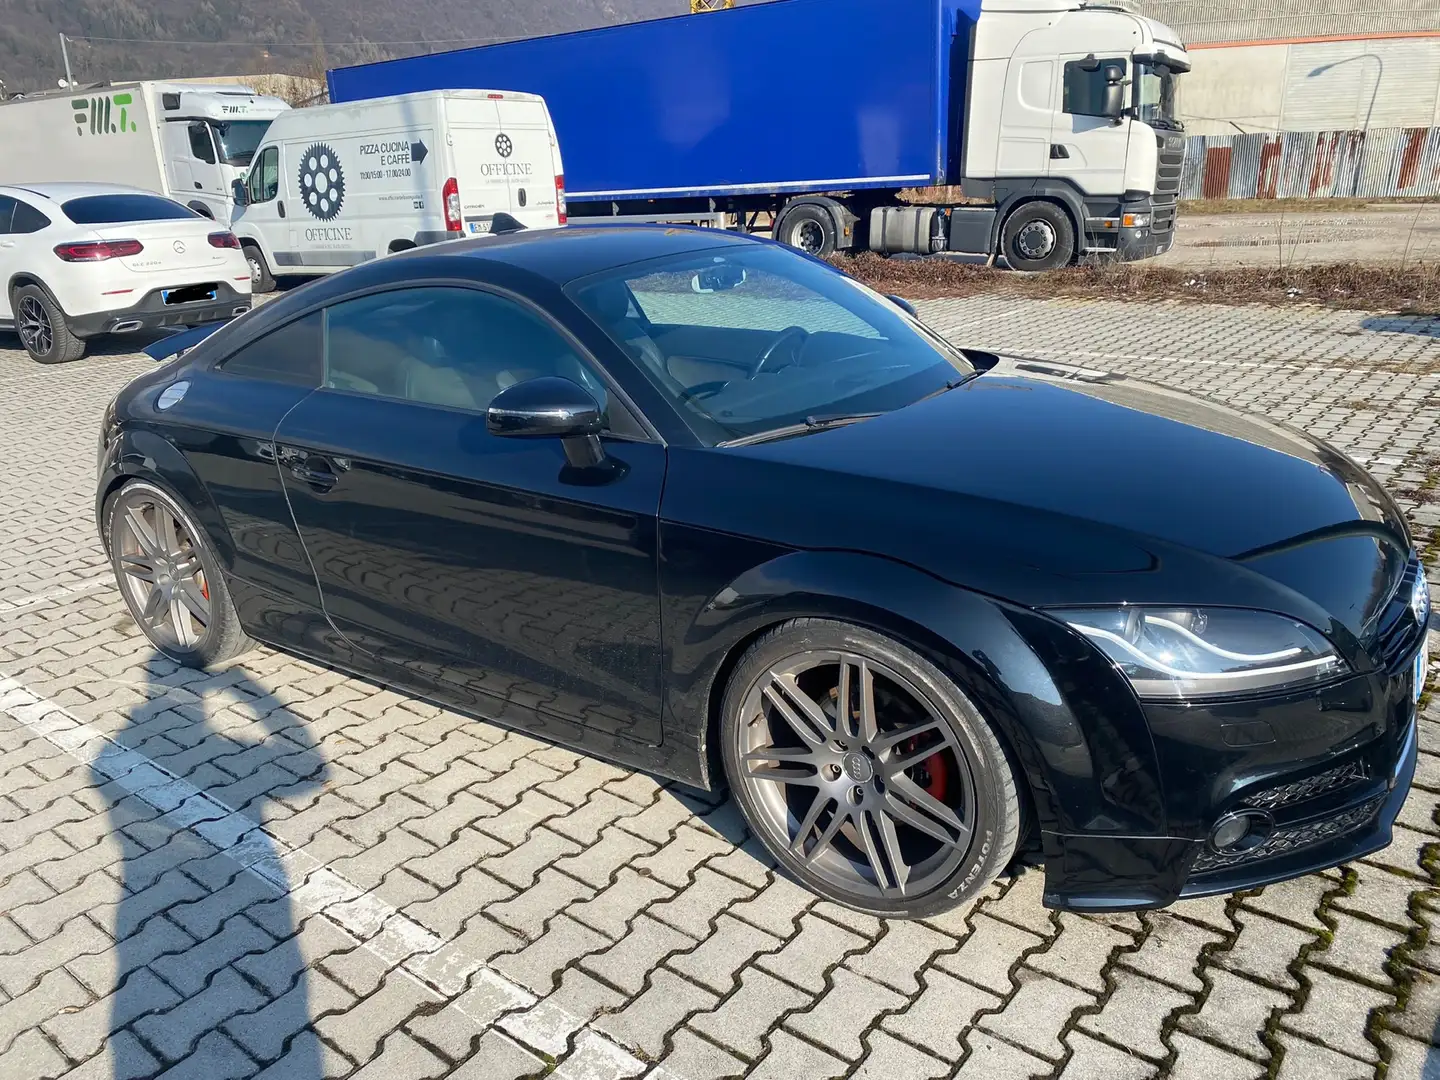 Audi TT usata a Belluno per € 13.000,-